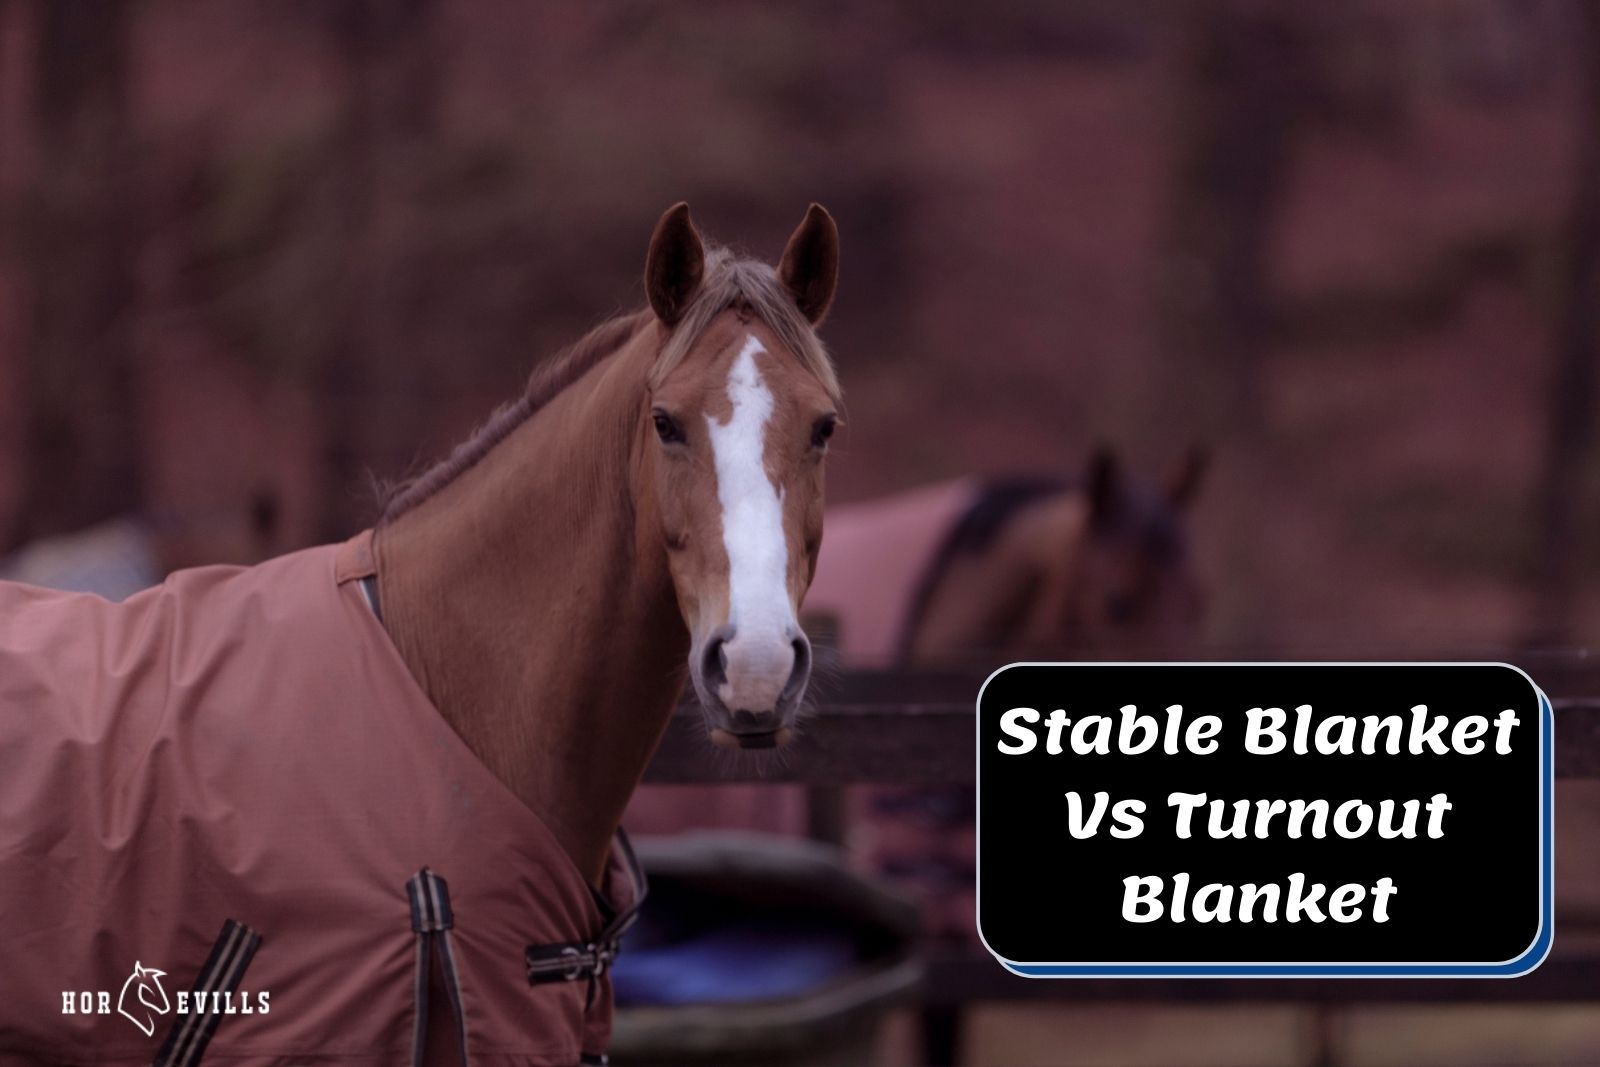 stallion beside "Stable Blanket vs turnout blanket" text